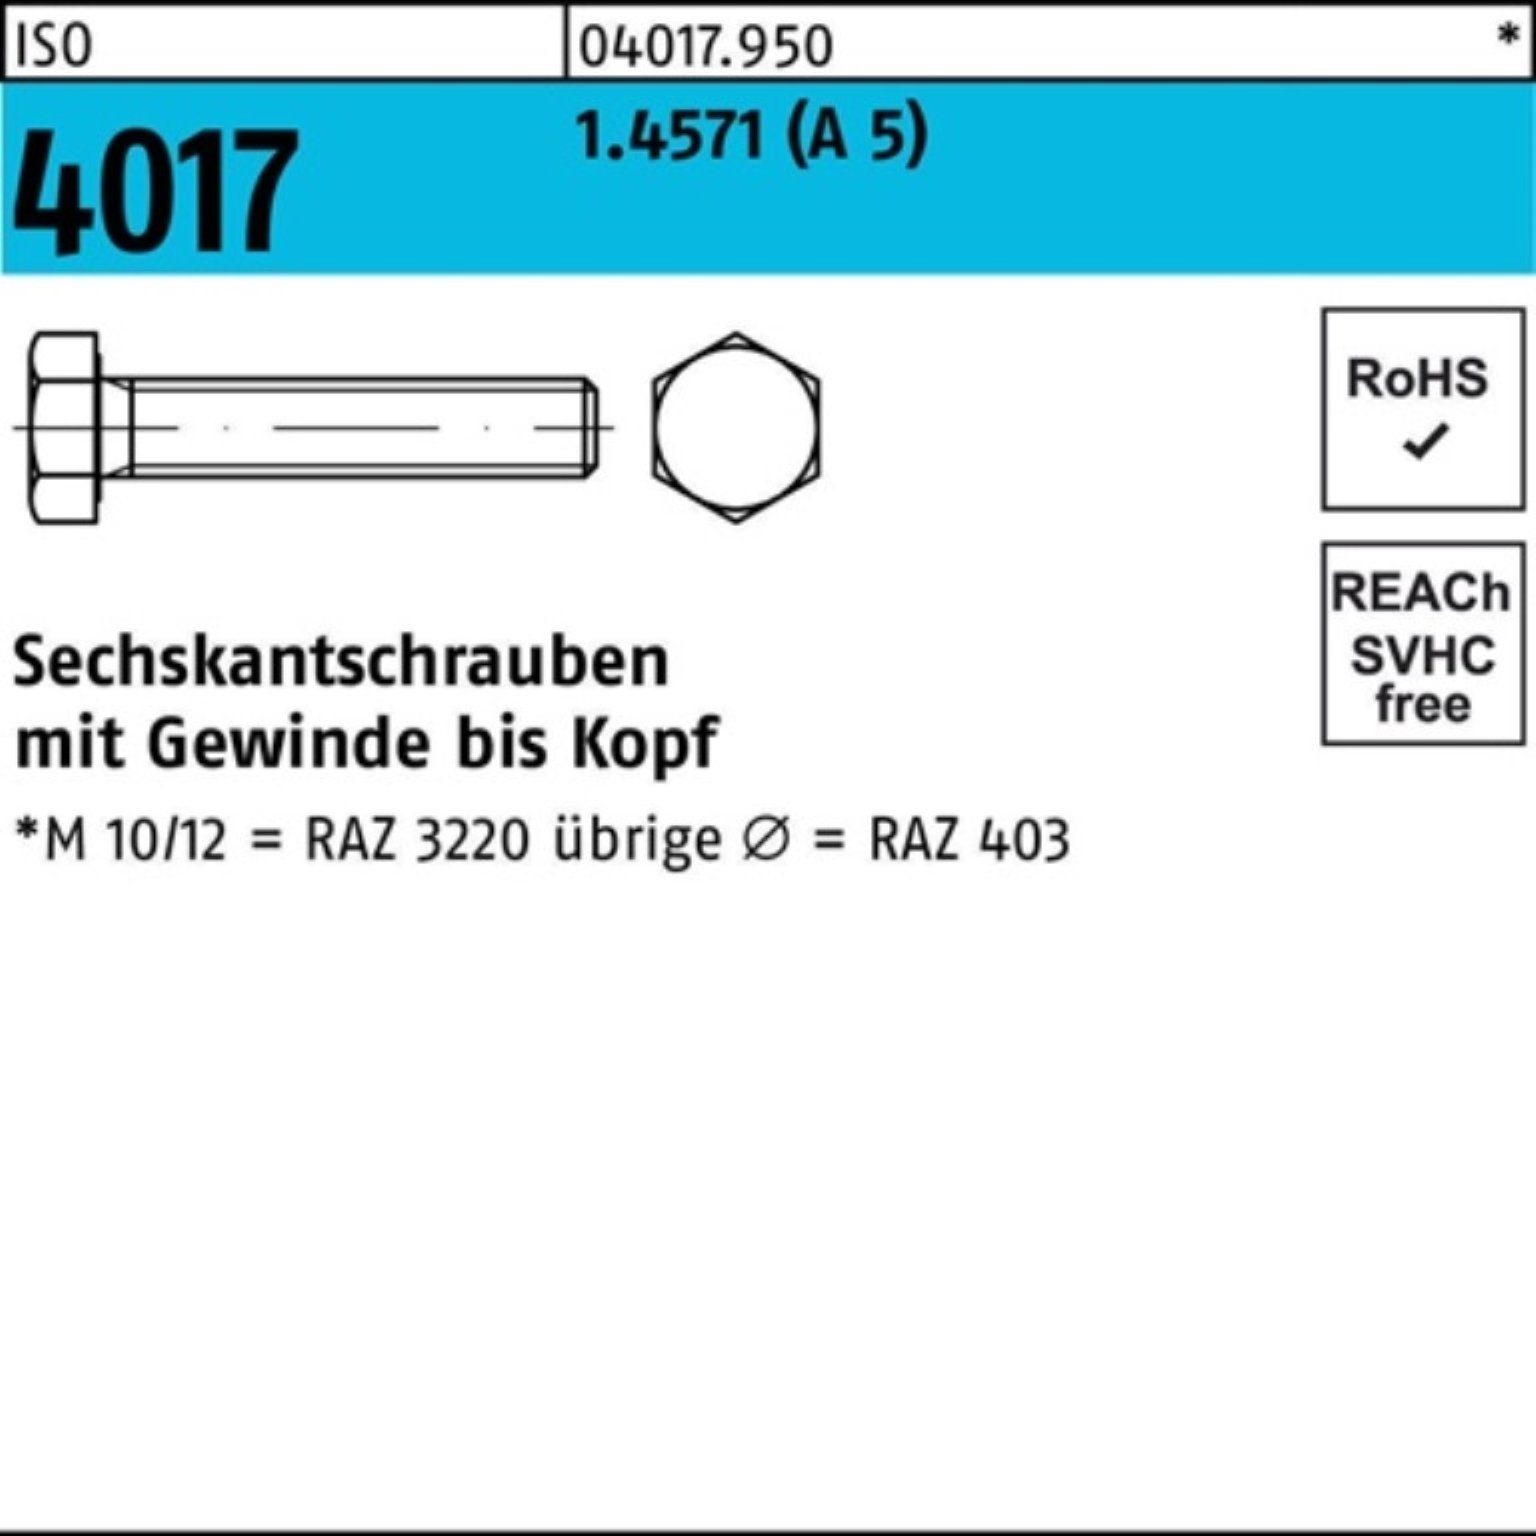 VG Sechskantschraube 4017 4017 100er Sechskantschraube 1 ISO ISO 40 Bufab 5 A Stück Pack M12x